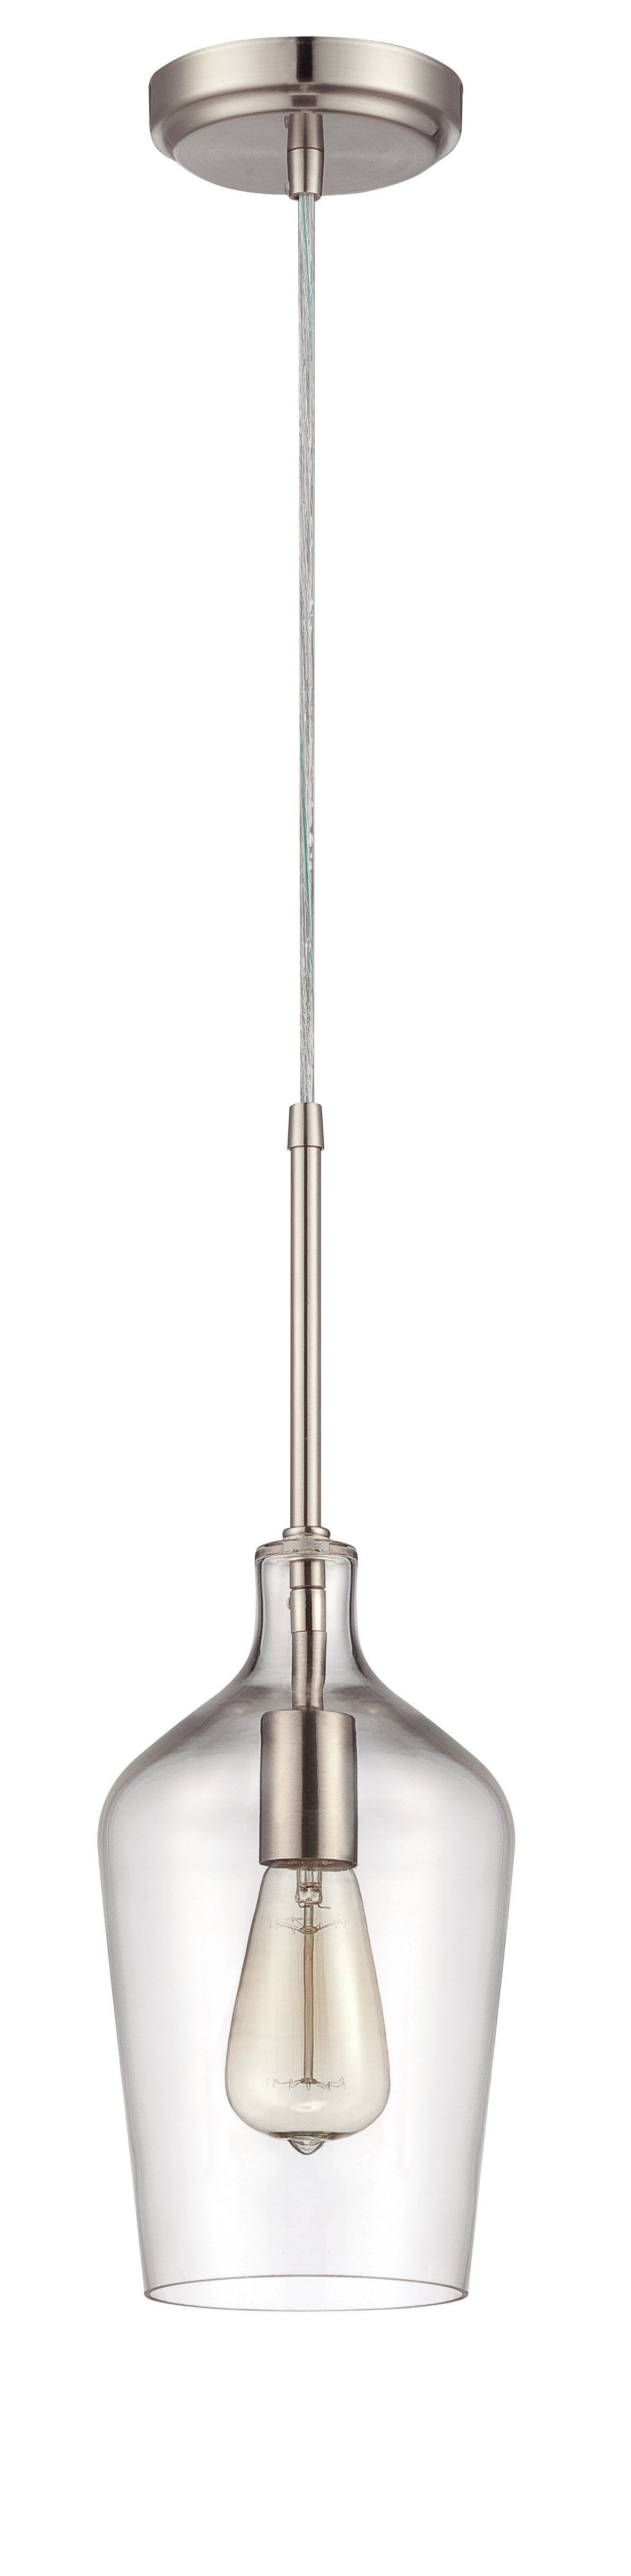 Oakhill 1 Light Single Bell Pendant Pertaining To Giacinta 1 Light Single Bell Pendants (View 11 of 30)